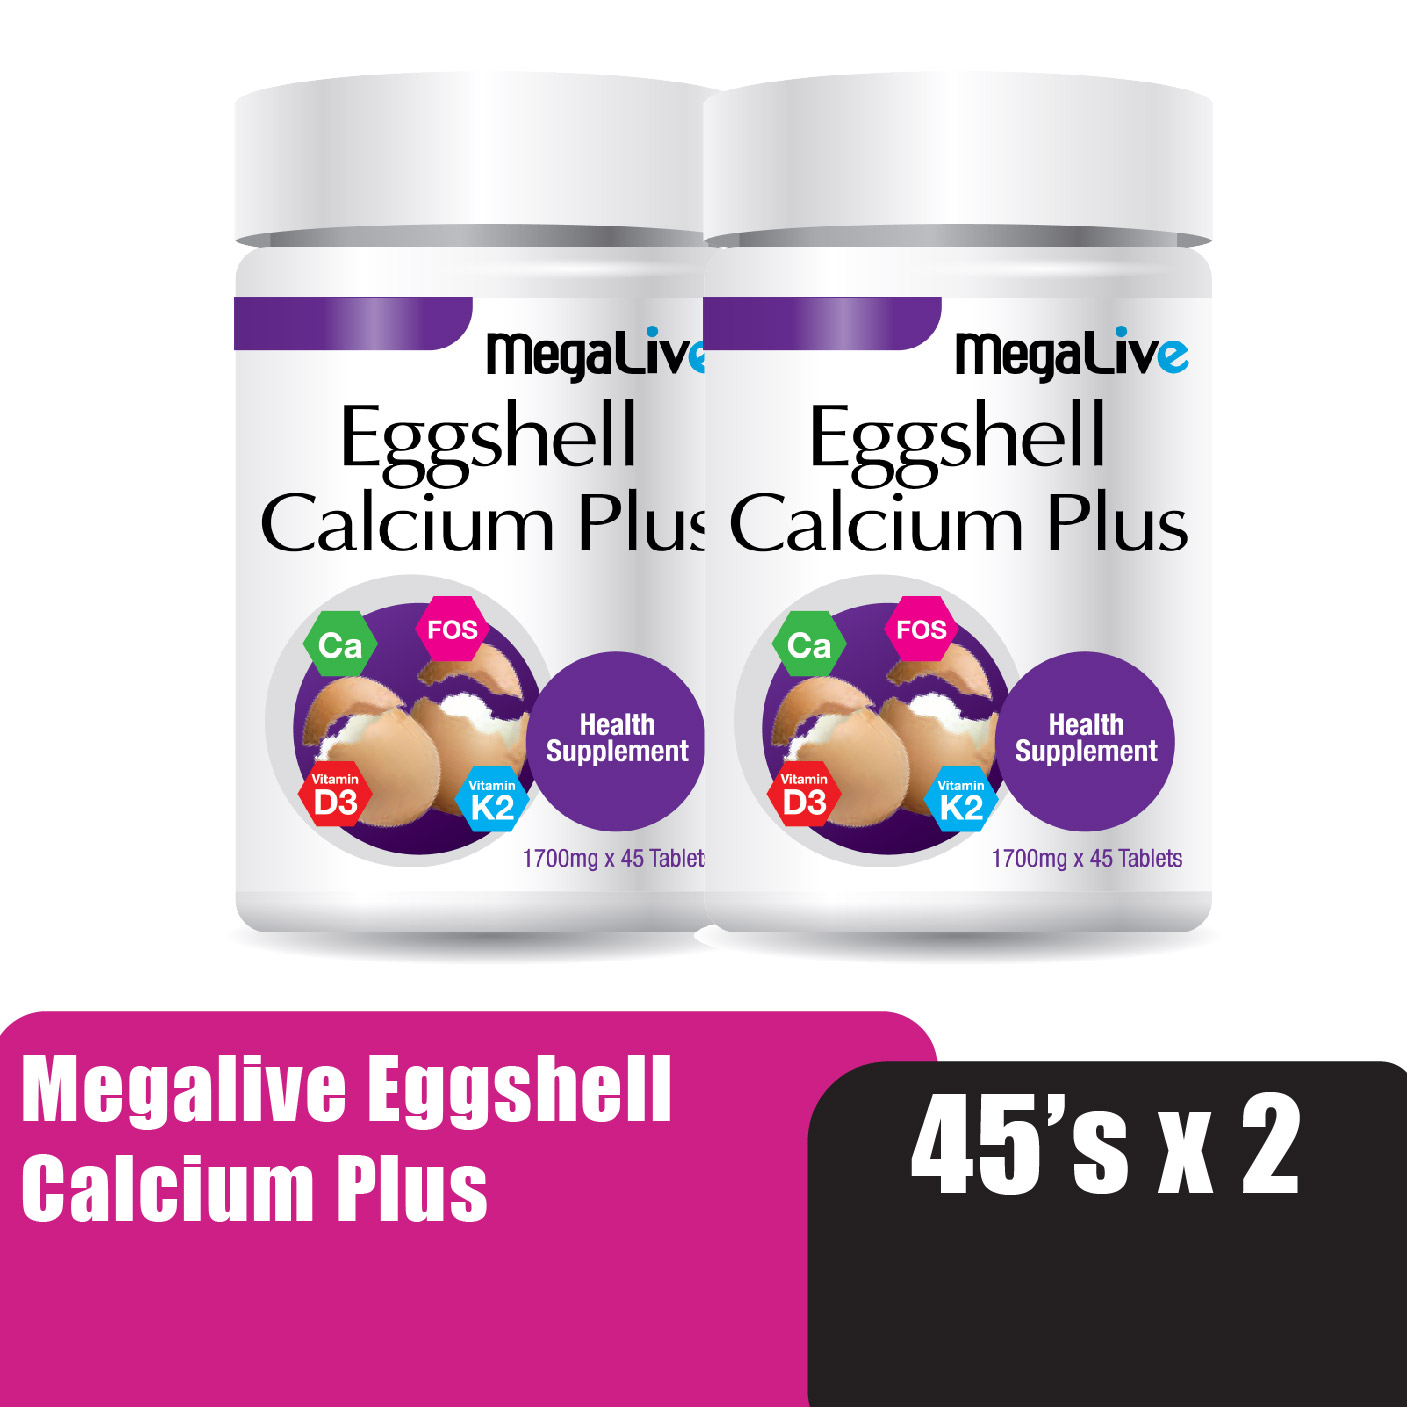 MEGALIVE Eggshell Calcium Plus 45'S x 2